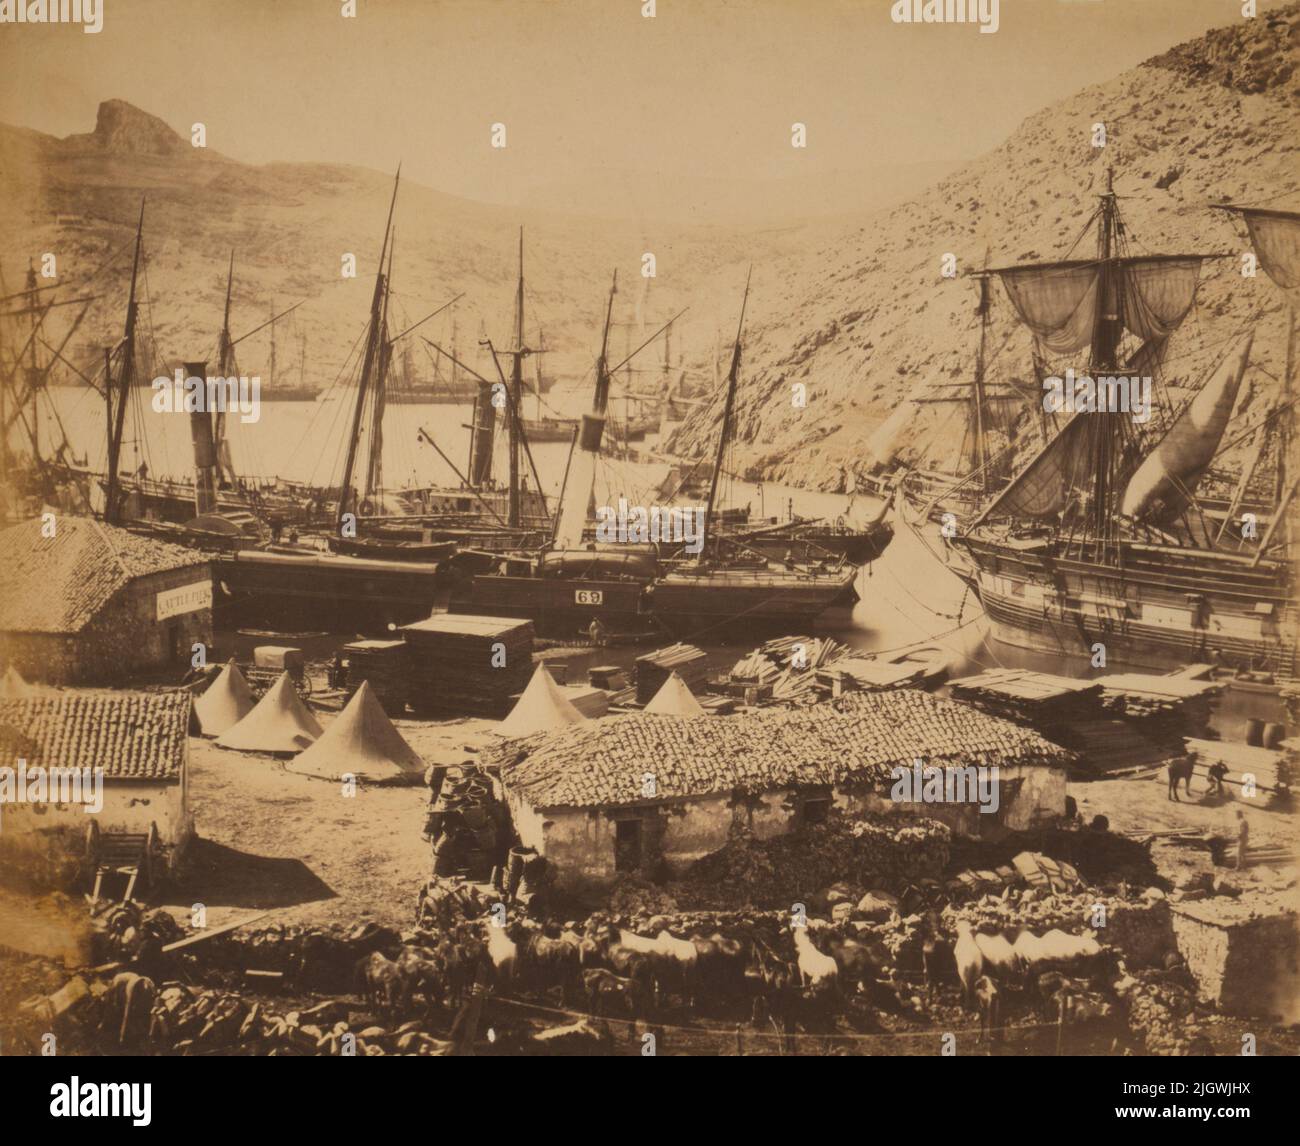 Une photo vintage vers 1855 de bateaux à aubes britanniques et de voiliers à quai dans le port de Balaklava pendant la guerre de Crimée de 1853 à 1856 Banque D'Images